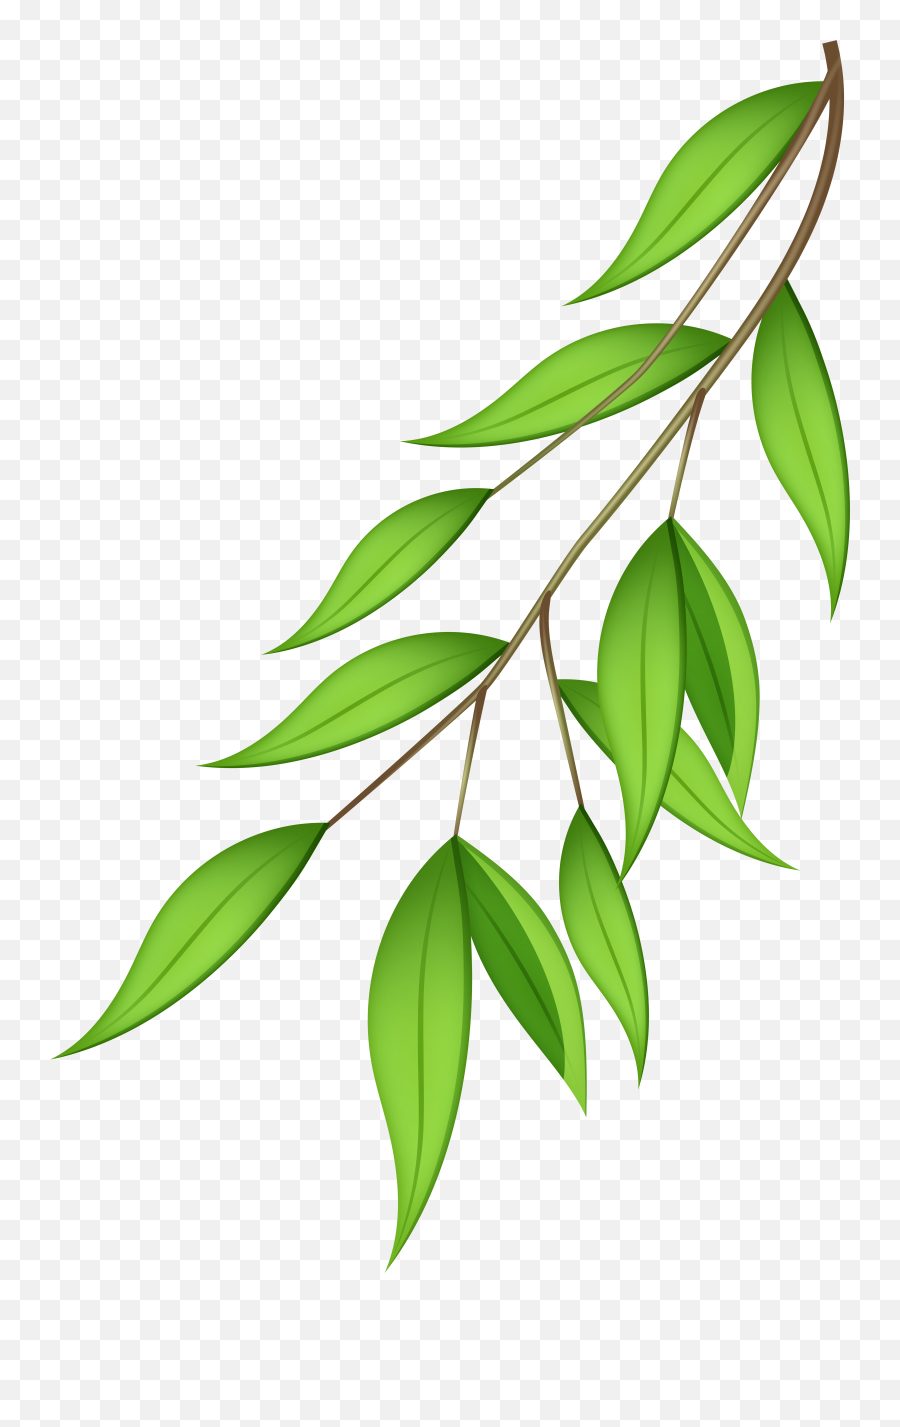 Free Olive Tree Transparent Background Download Free Clip - Leaves Branches Transparent Bg Emoji,Olive Branch Emoji